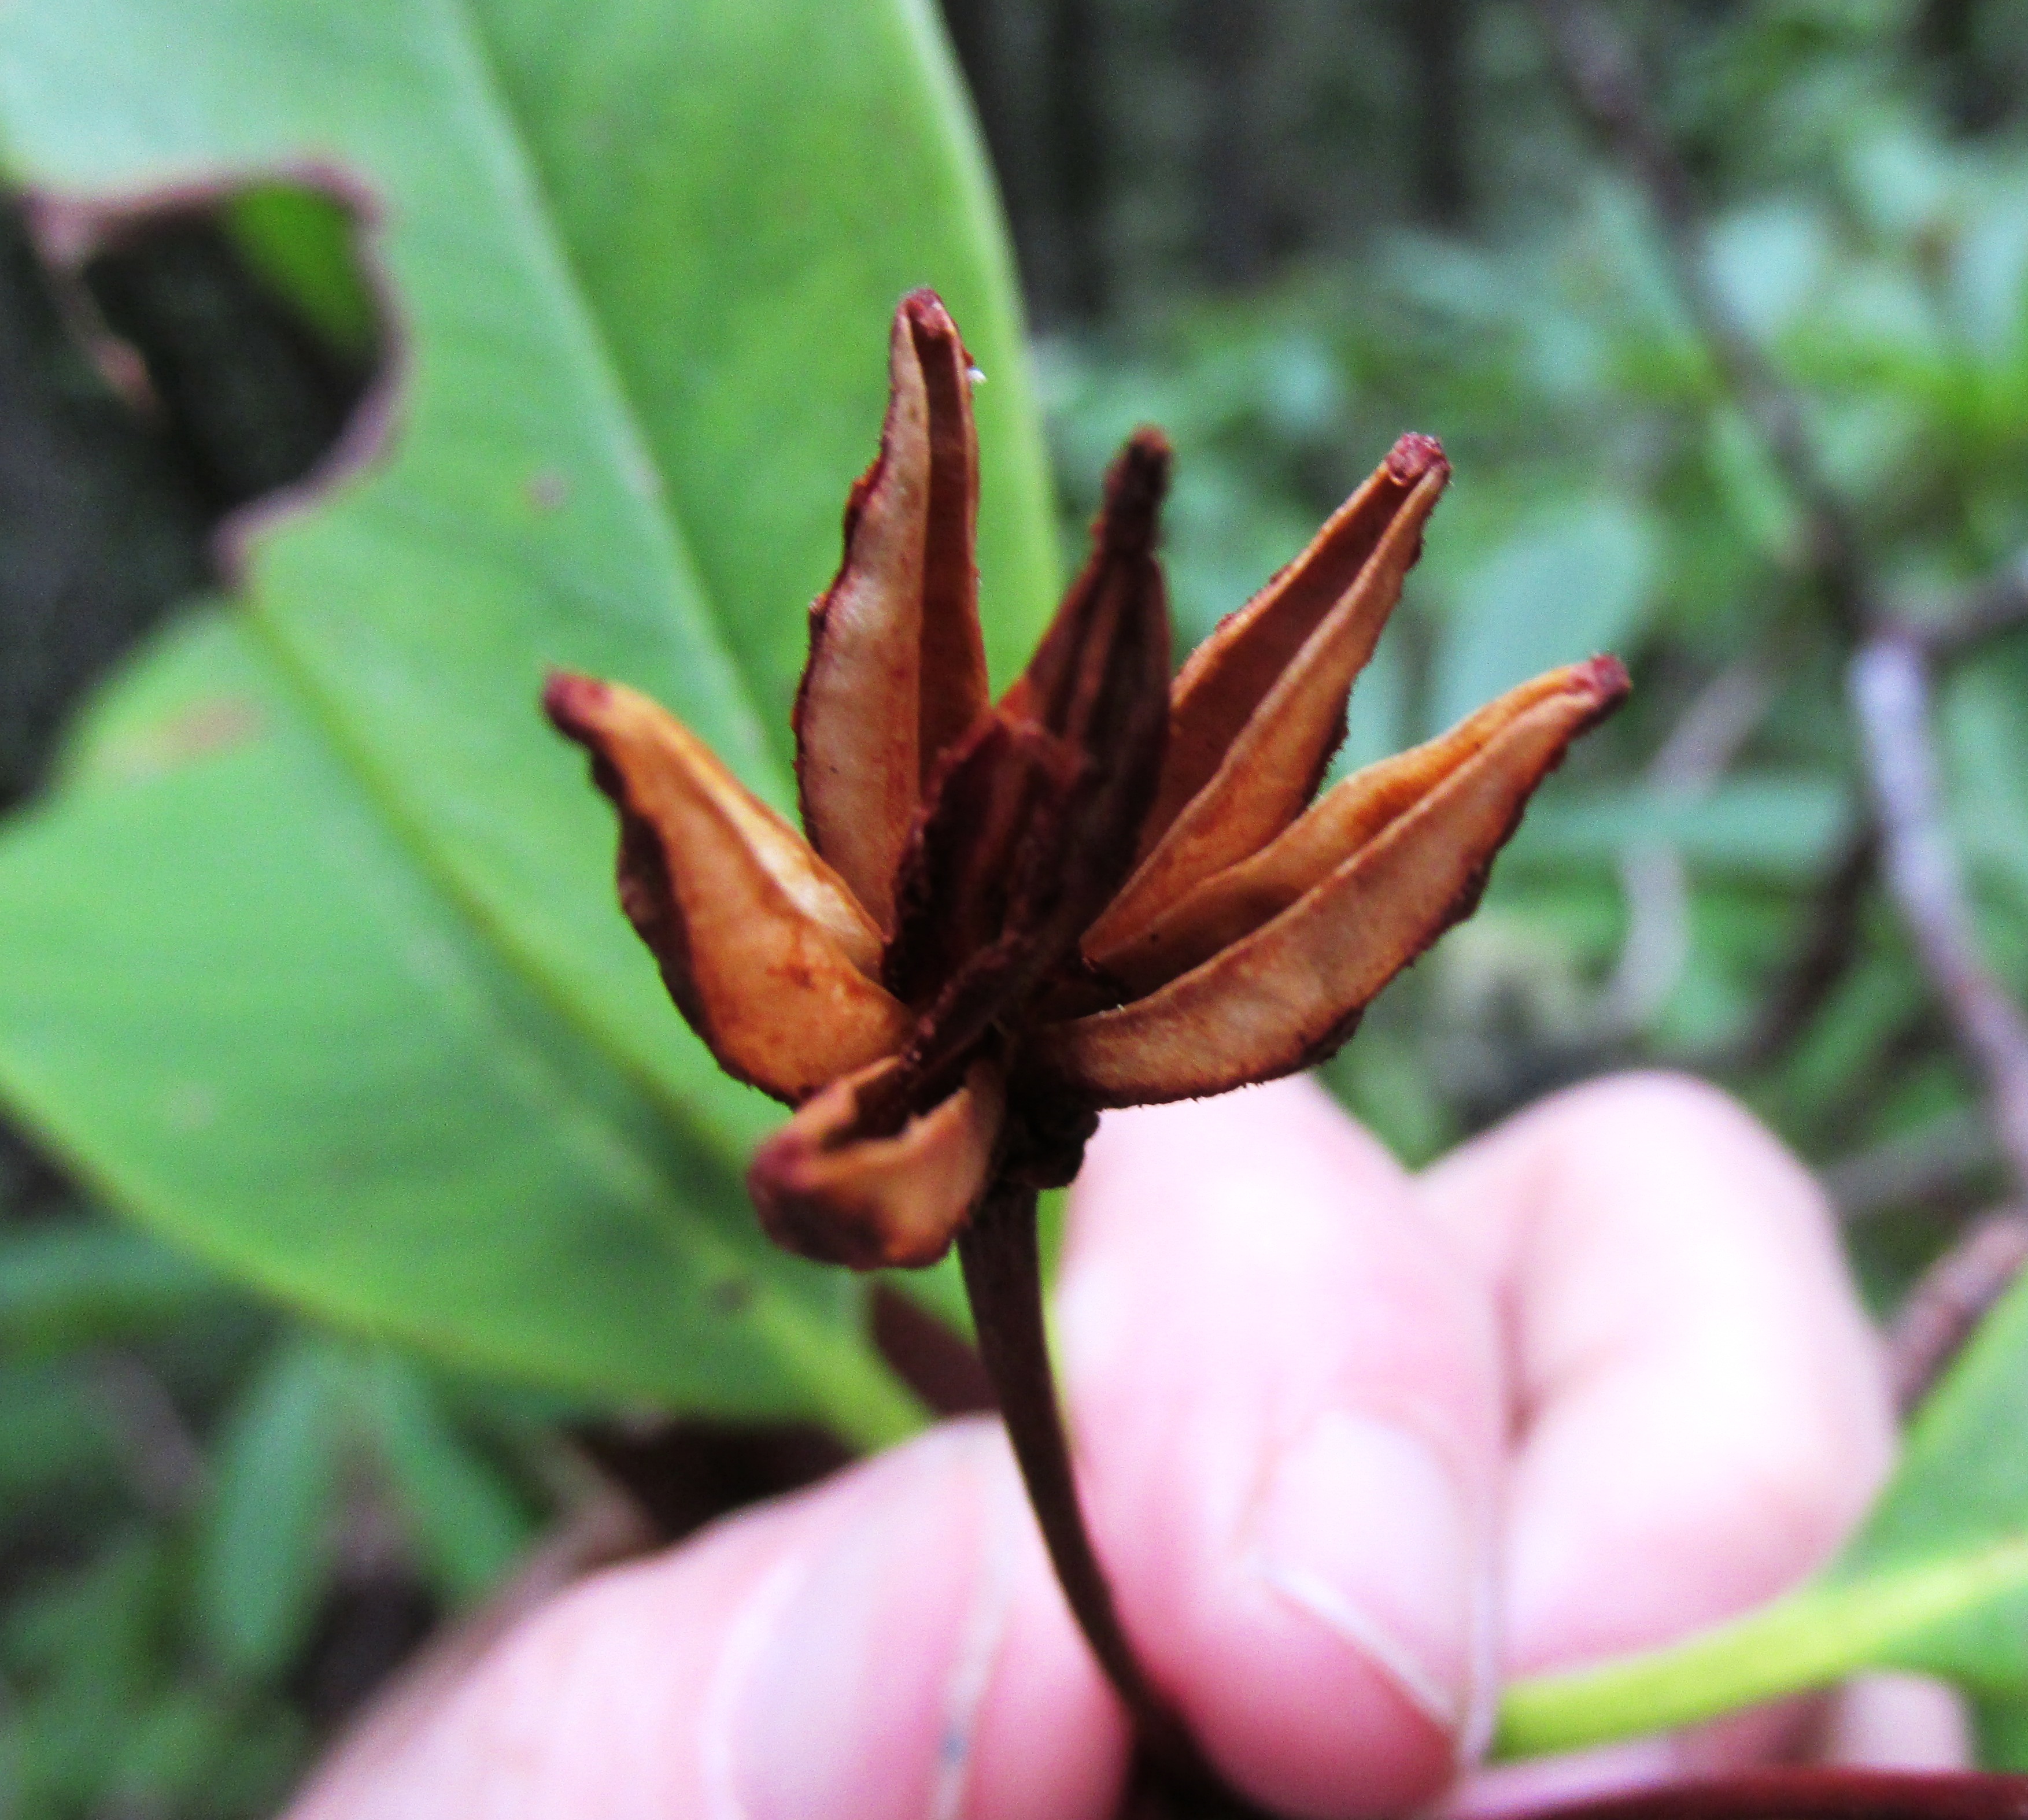 Rhododendrum Seed Capsule